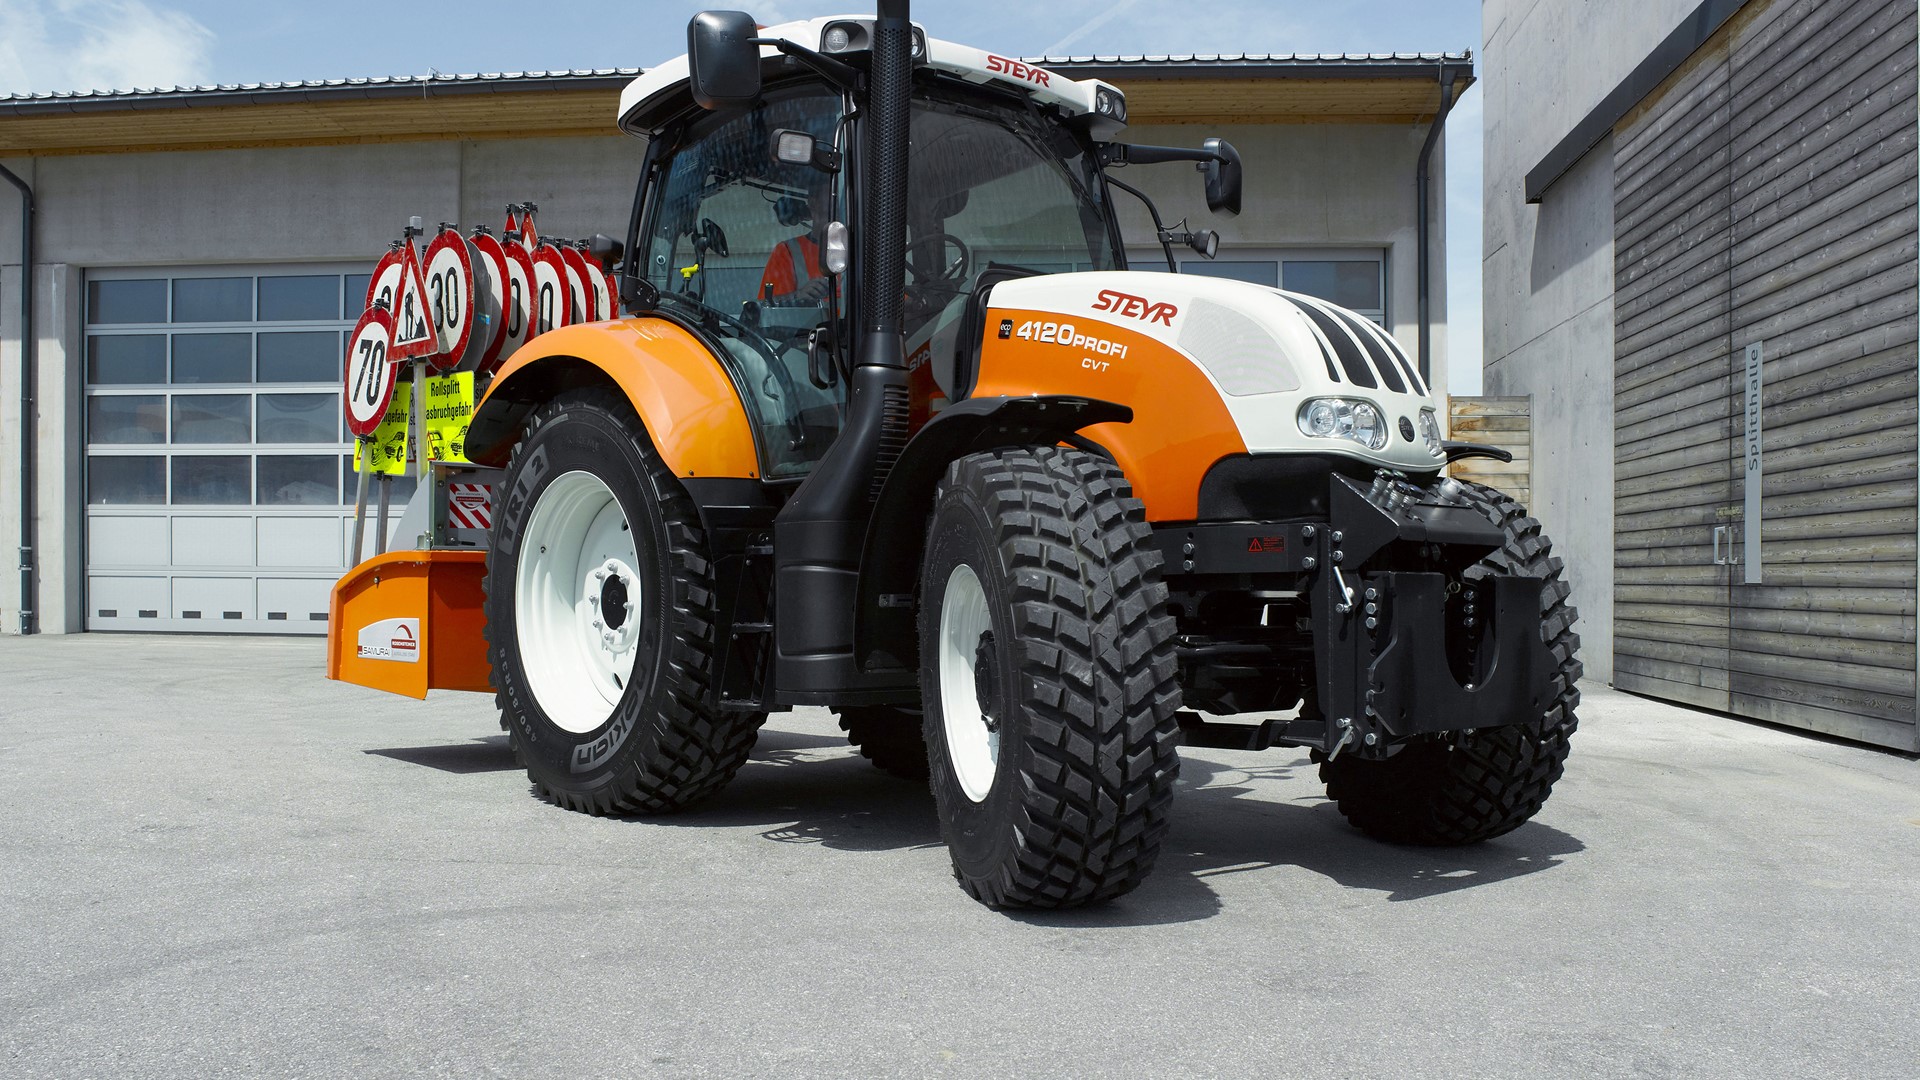 persoon De slaapkamer schoonmaken Viskeus Steyr Presents New Innovative and Multifunctional Tractors at Agritechnica